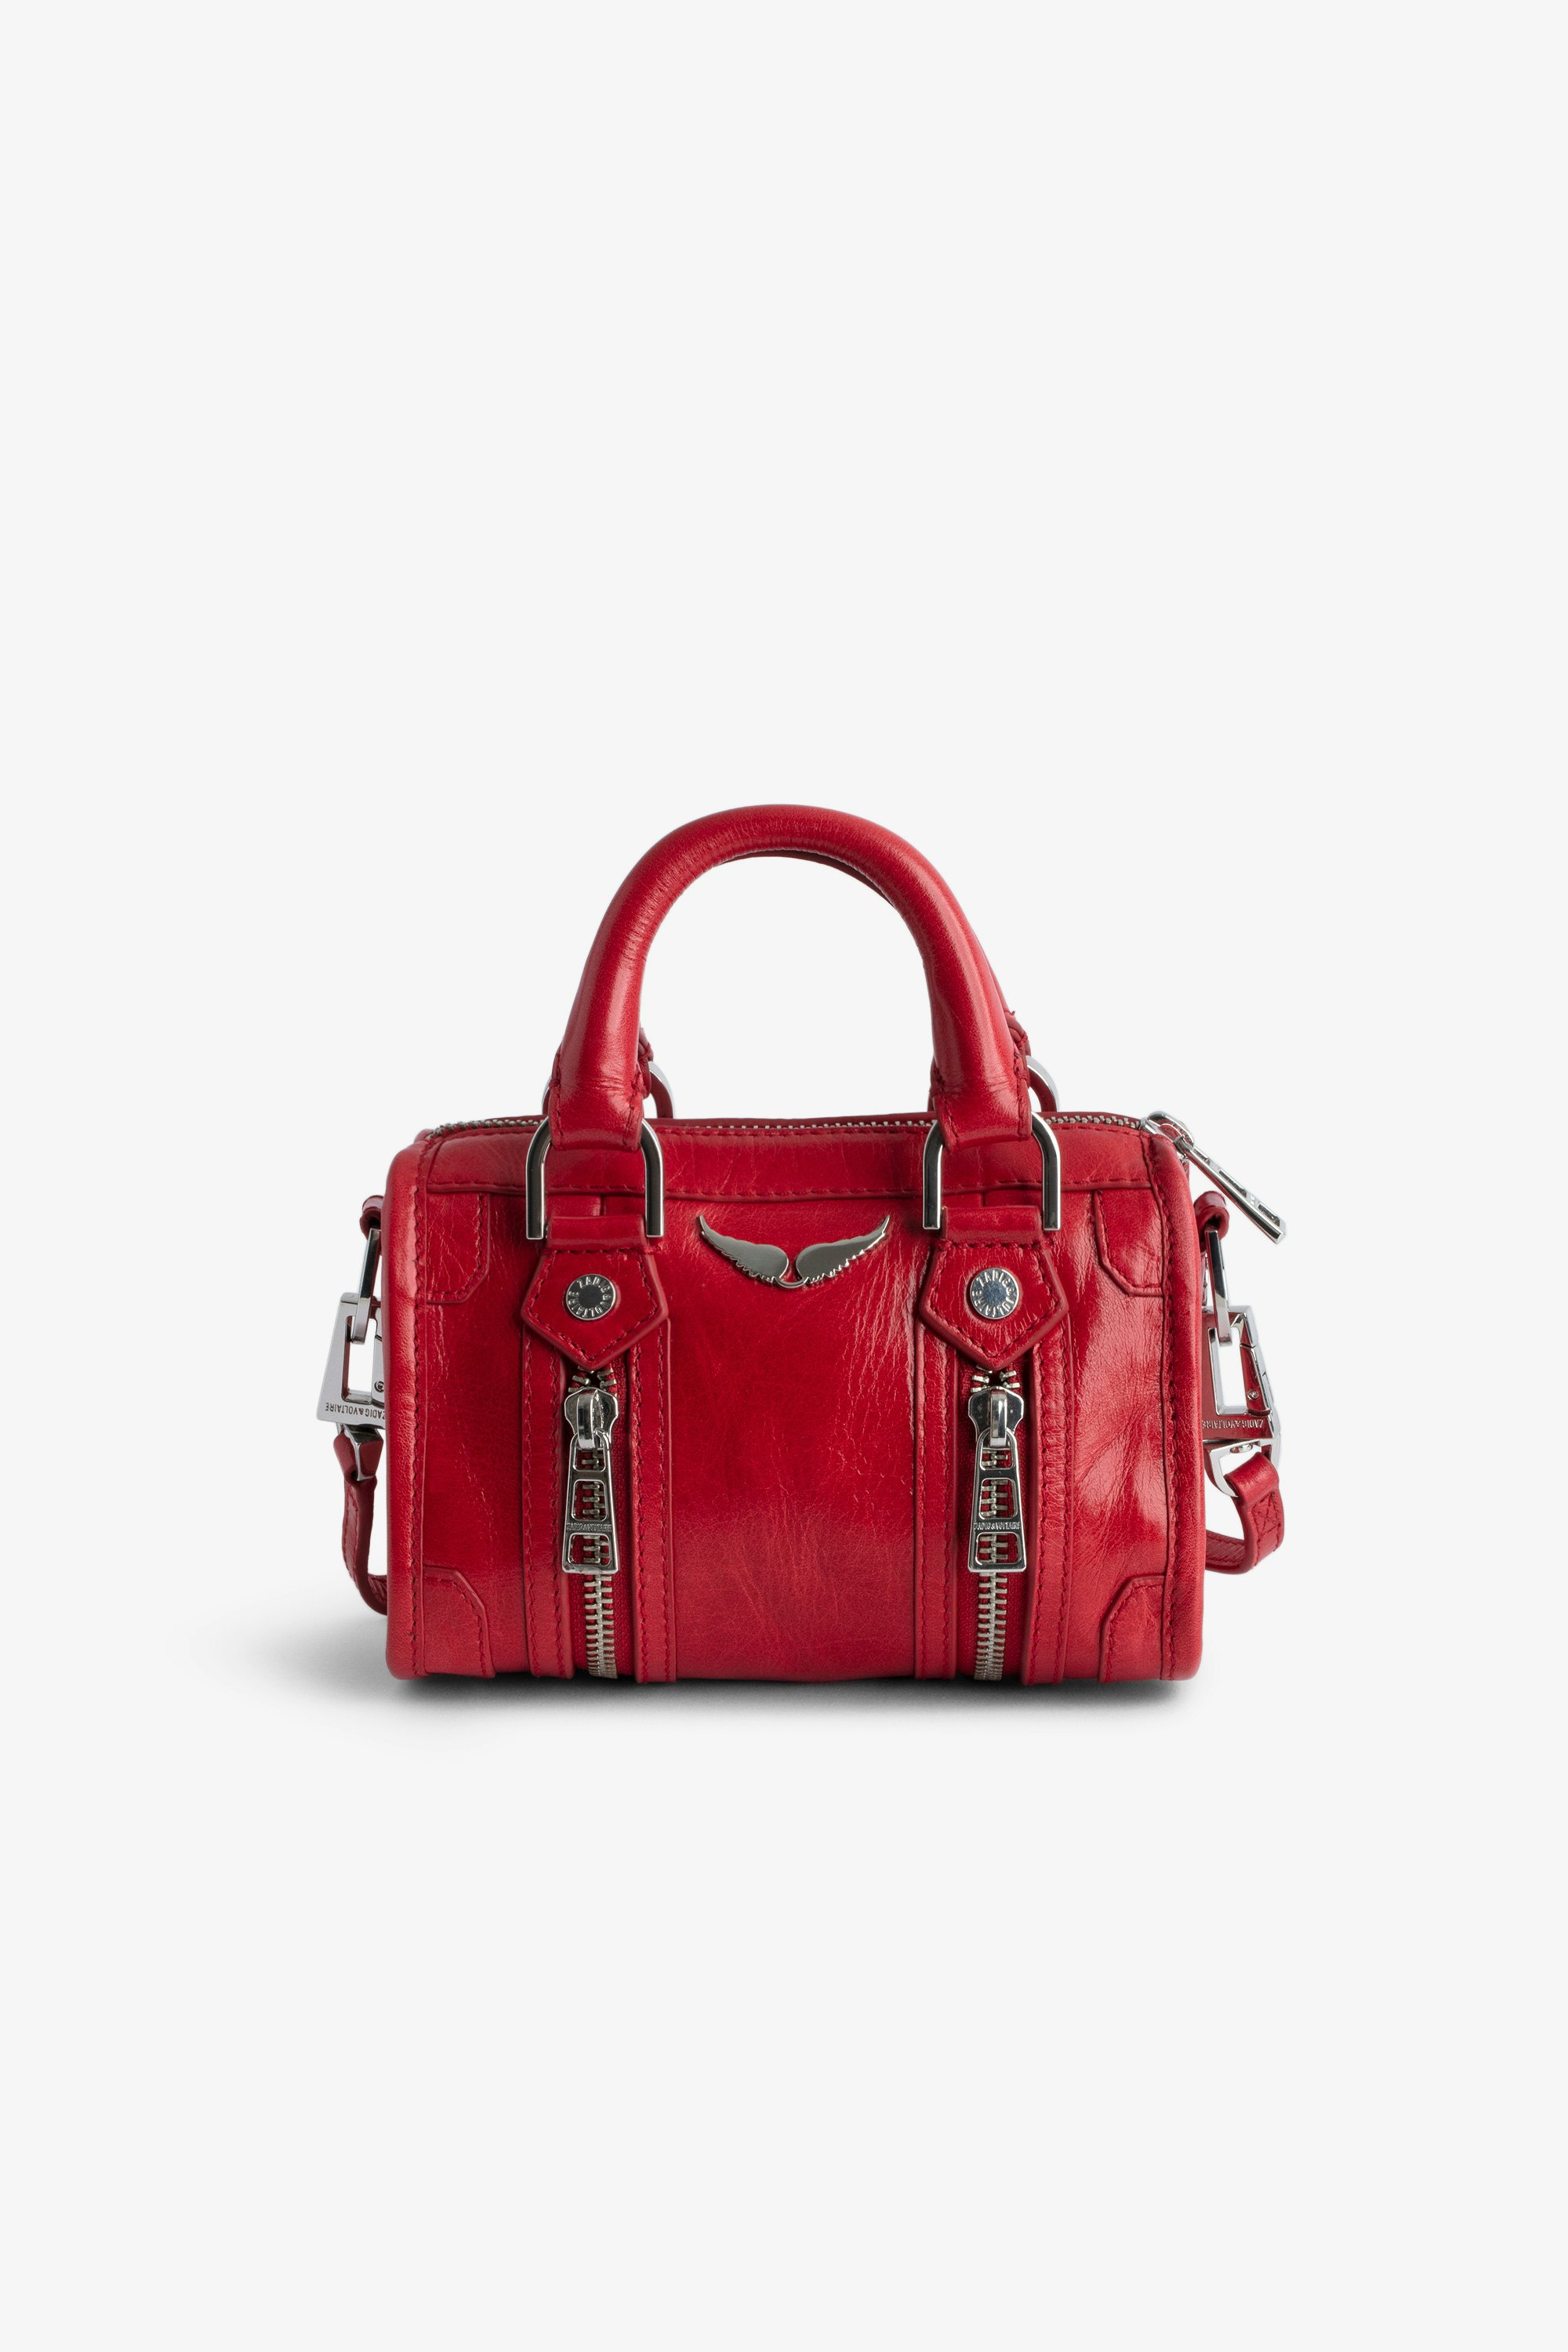 Bolso Sunny Nano #2 - Pequeño bolso rojo de charol con efecto vintage con asas cortas y bandolera.